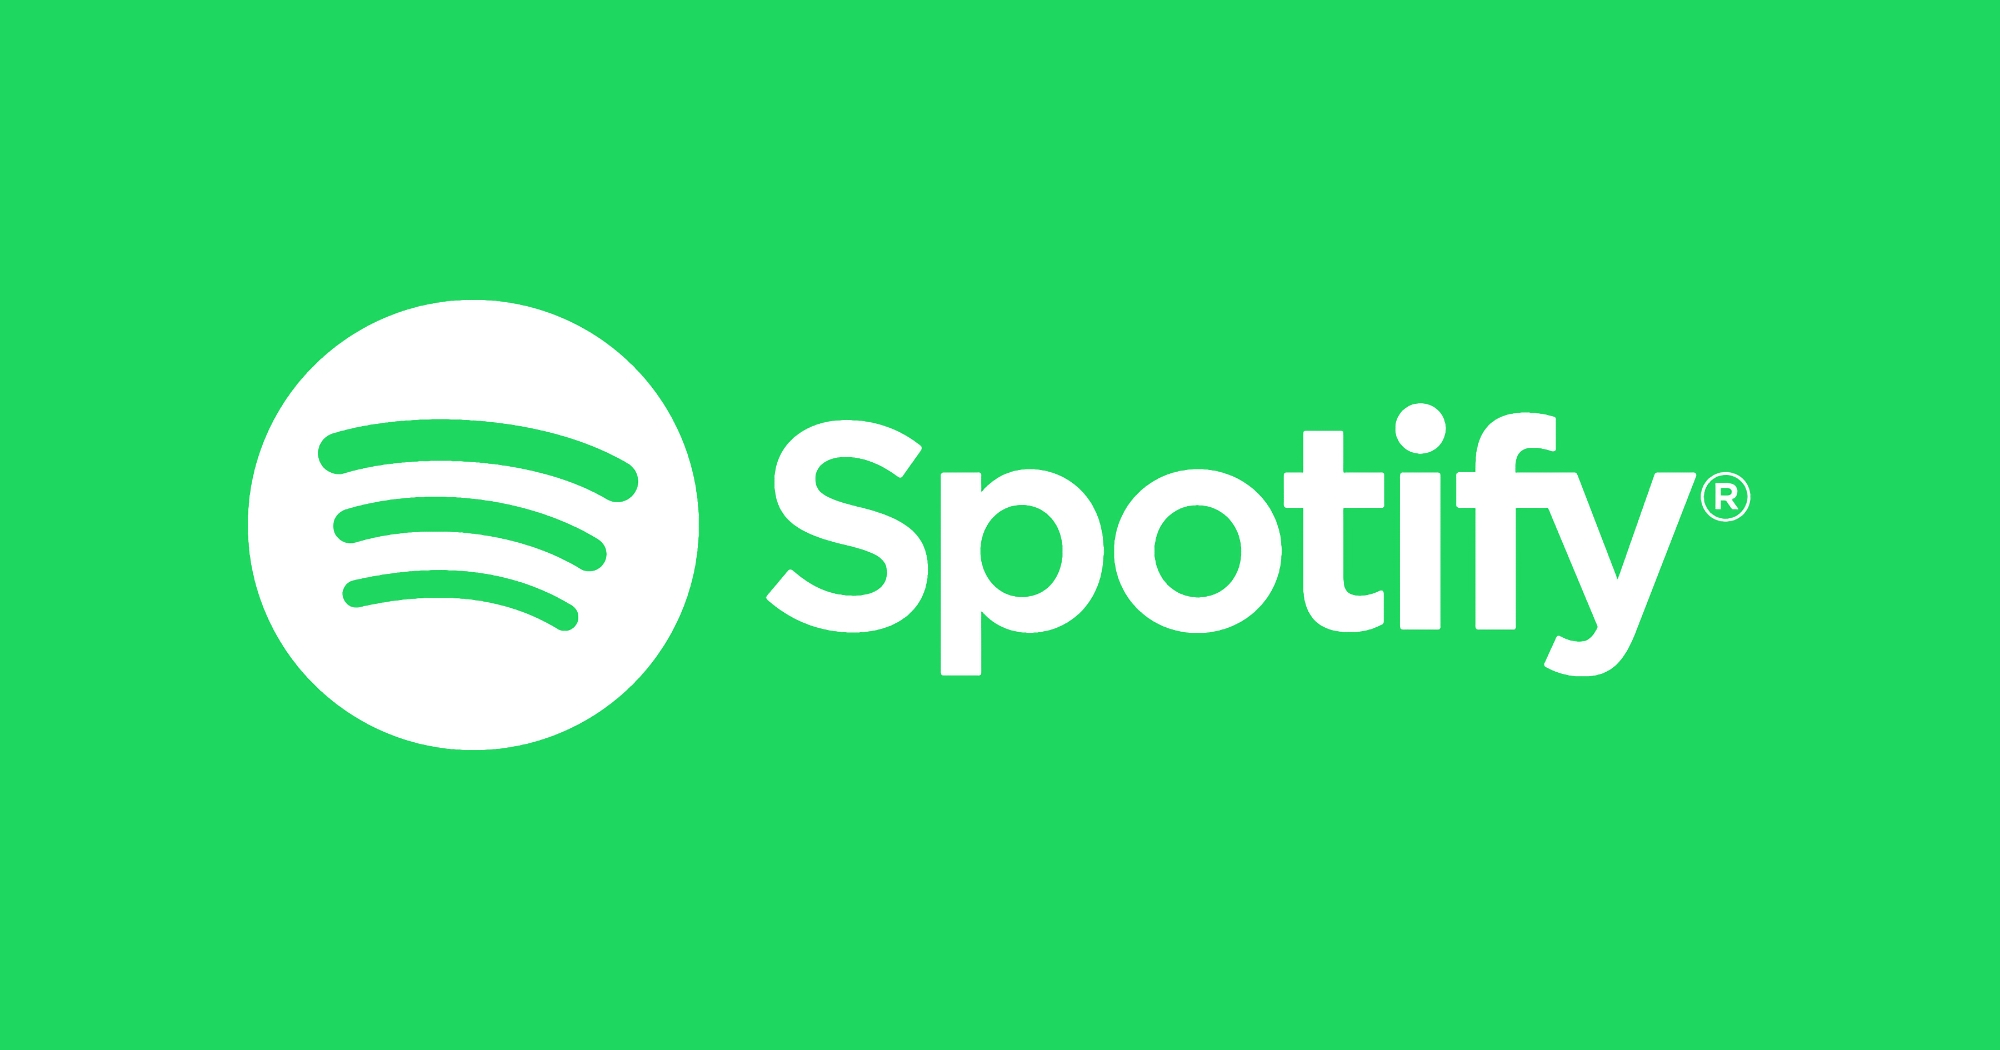 $ 0 per tre mesi di abbonamento Premium: Spotify ha lanciato una promozione per attirare nuovi utenti